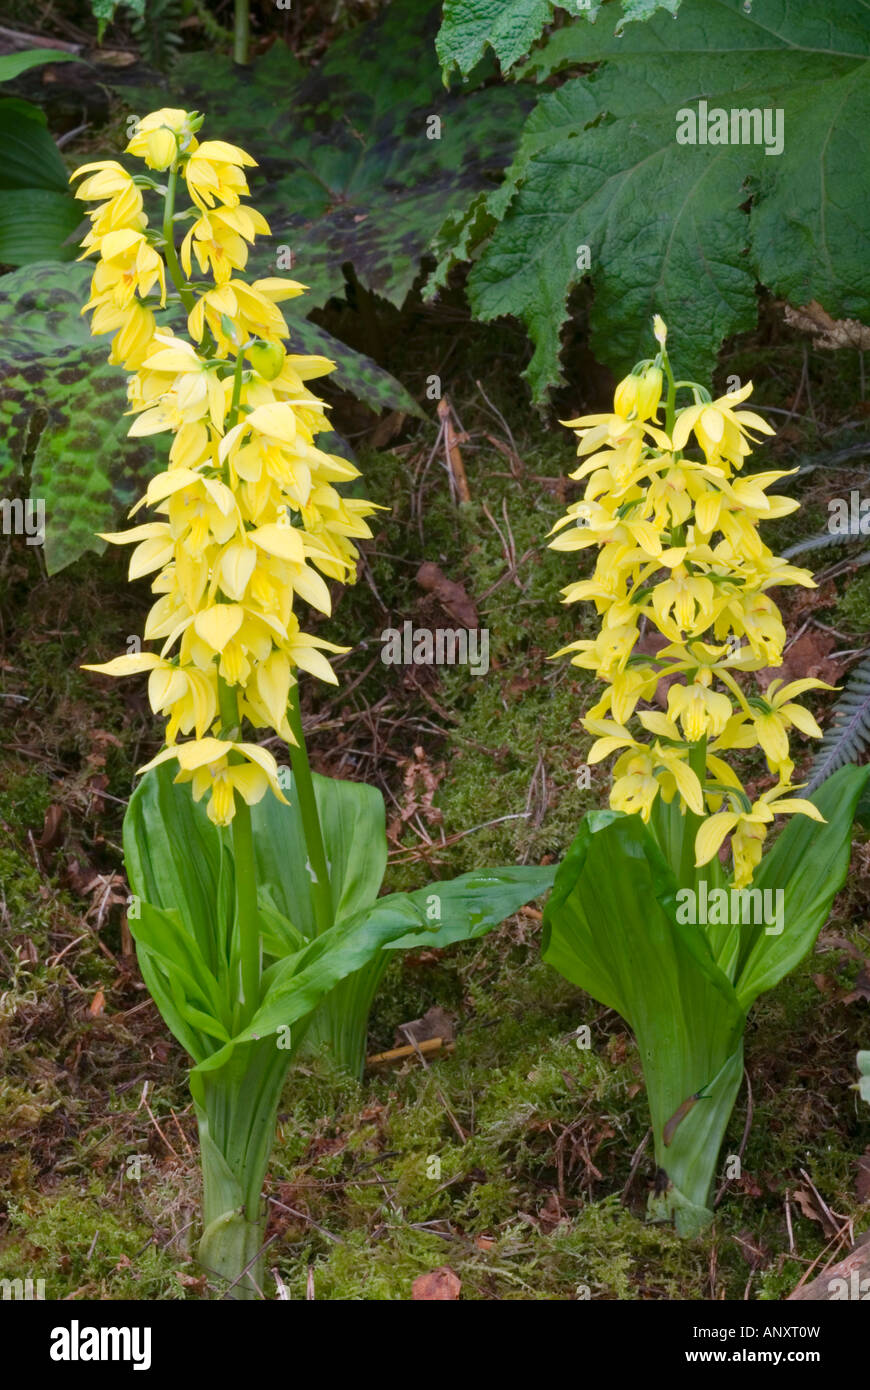 Sanguisorba sieboldii orchidées Ebine jaune croissant dans la masse, le port de la plante dans le jardin Banque D'Images